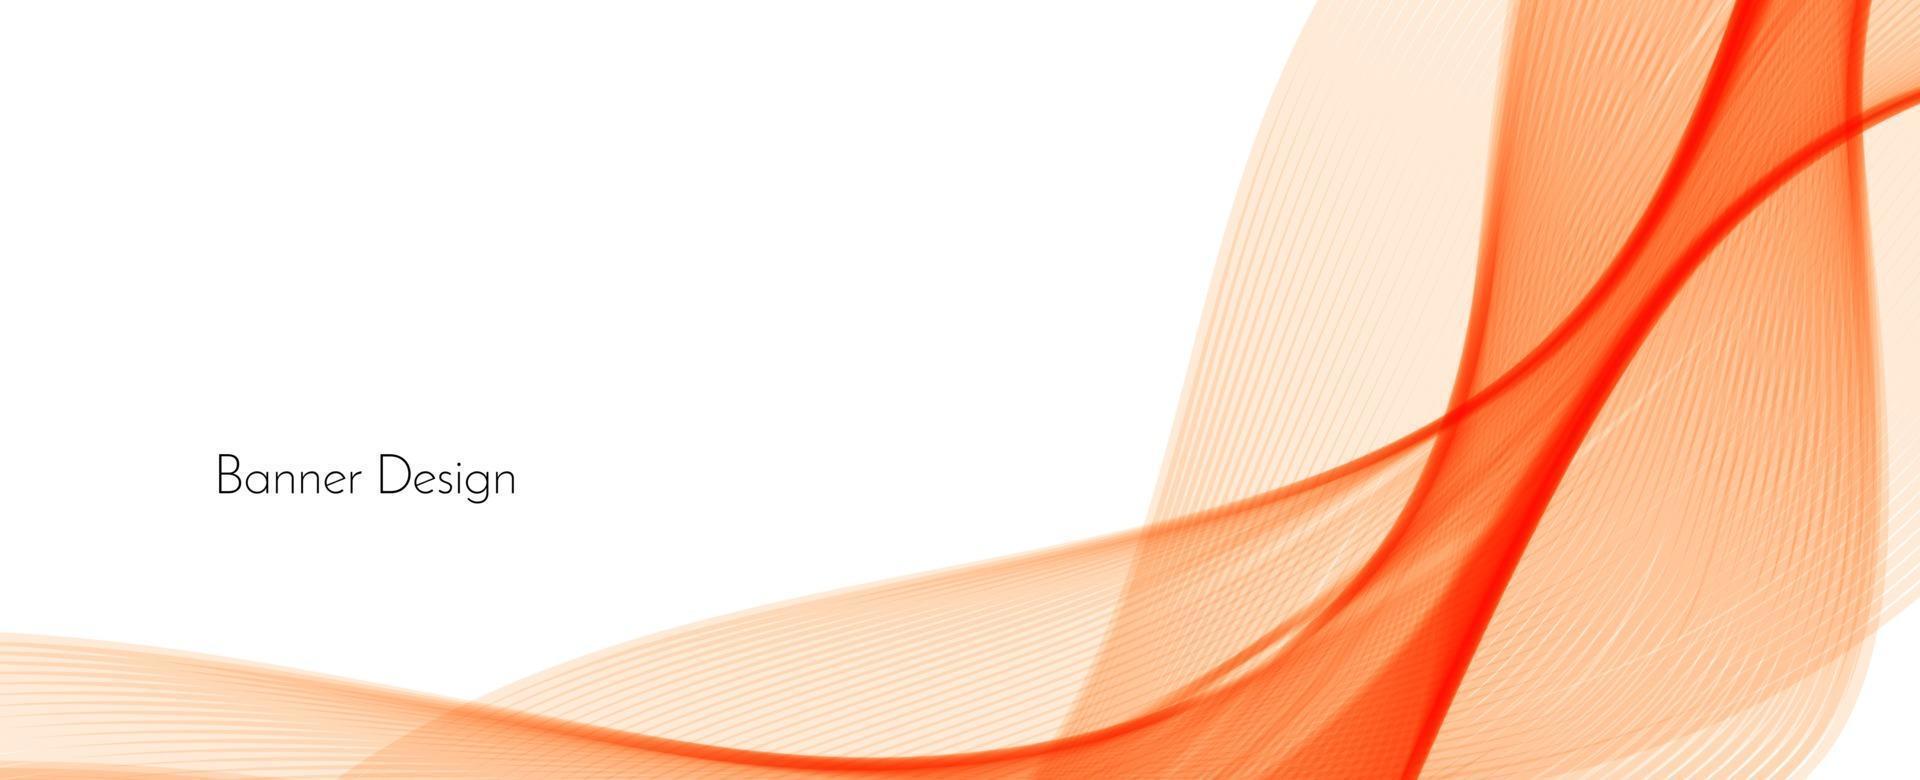 abstrait rouge orange moderne décoratif élégant vague fond de bannière vecteur